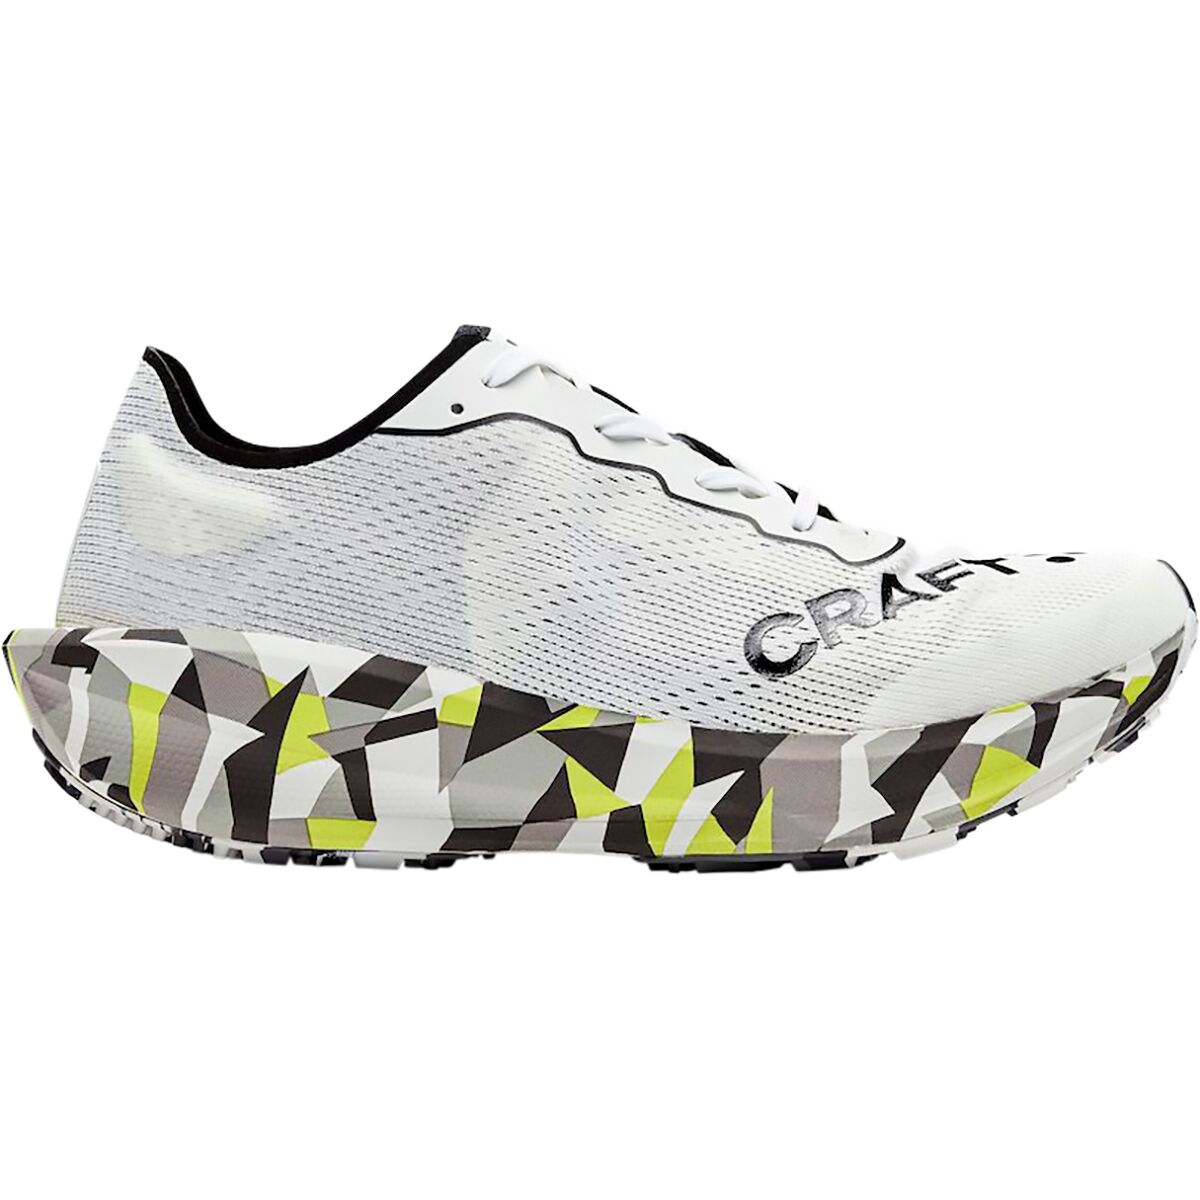 Craft CTM Ultra Carbon 2 Running Shoe - Men's - Men